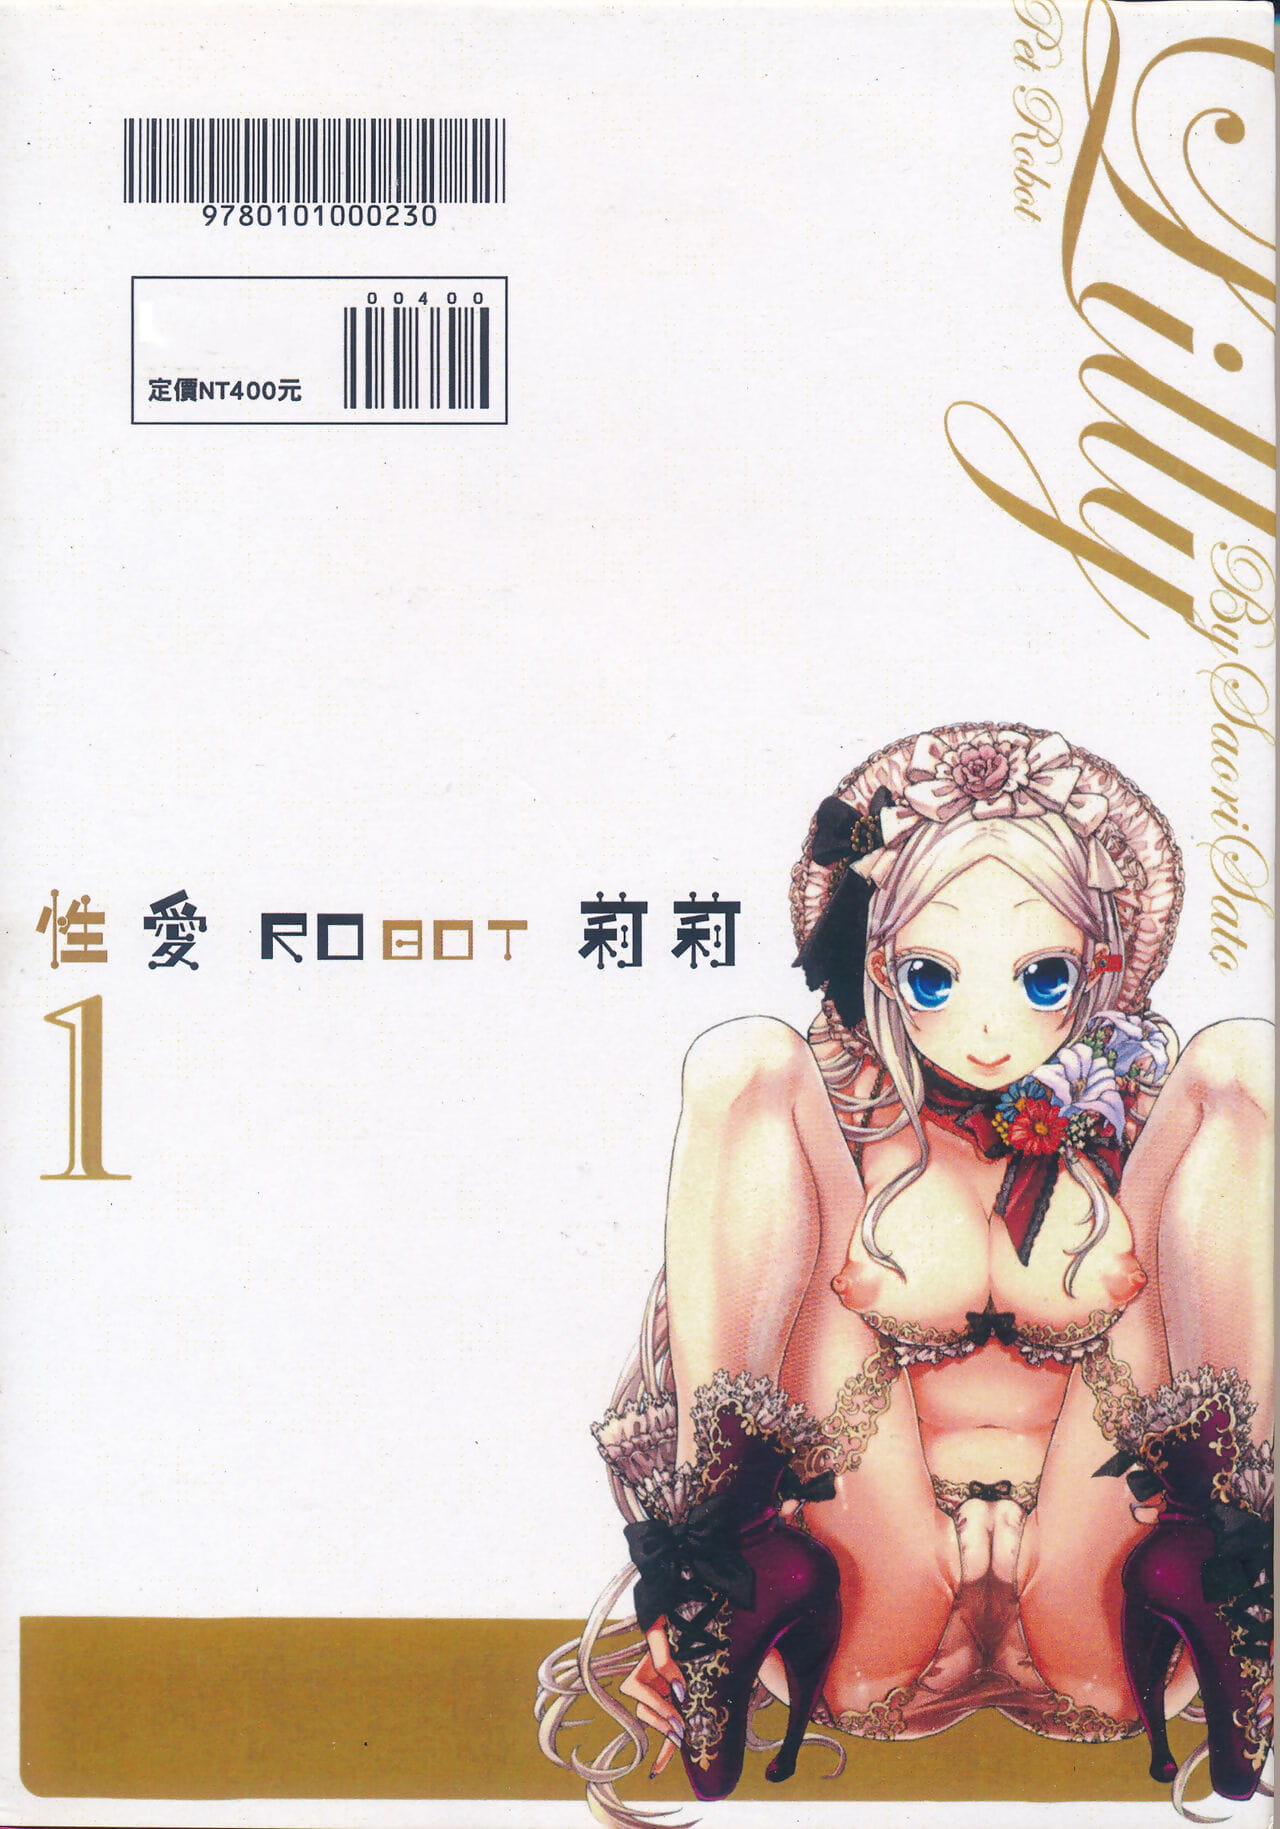 Satou Saori Aigan Roboter Lilly pet Roboter Lilly vol. 1 性愛robot 莉莉 vol. 1 Chinesisch Teil 7